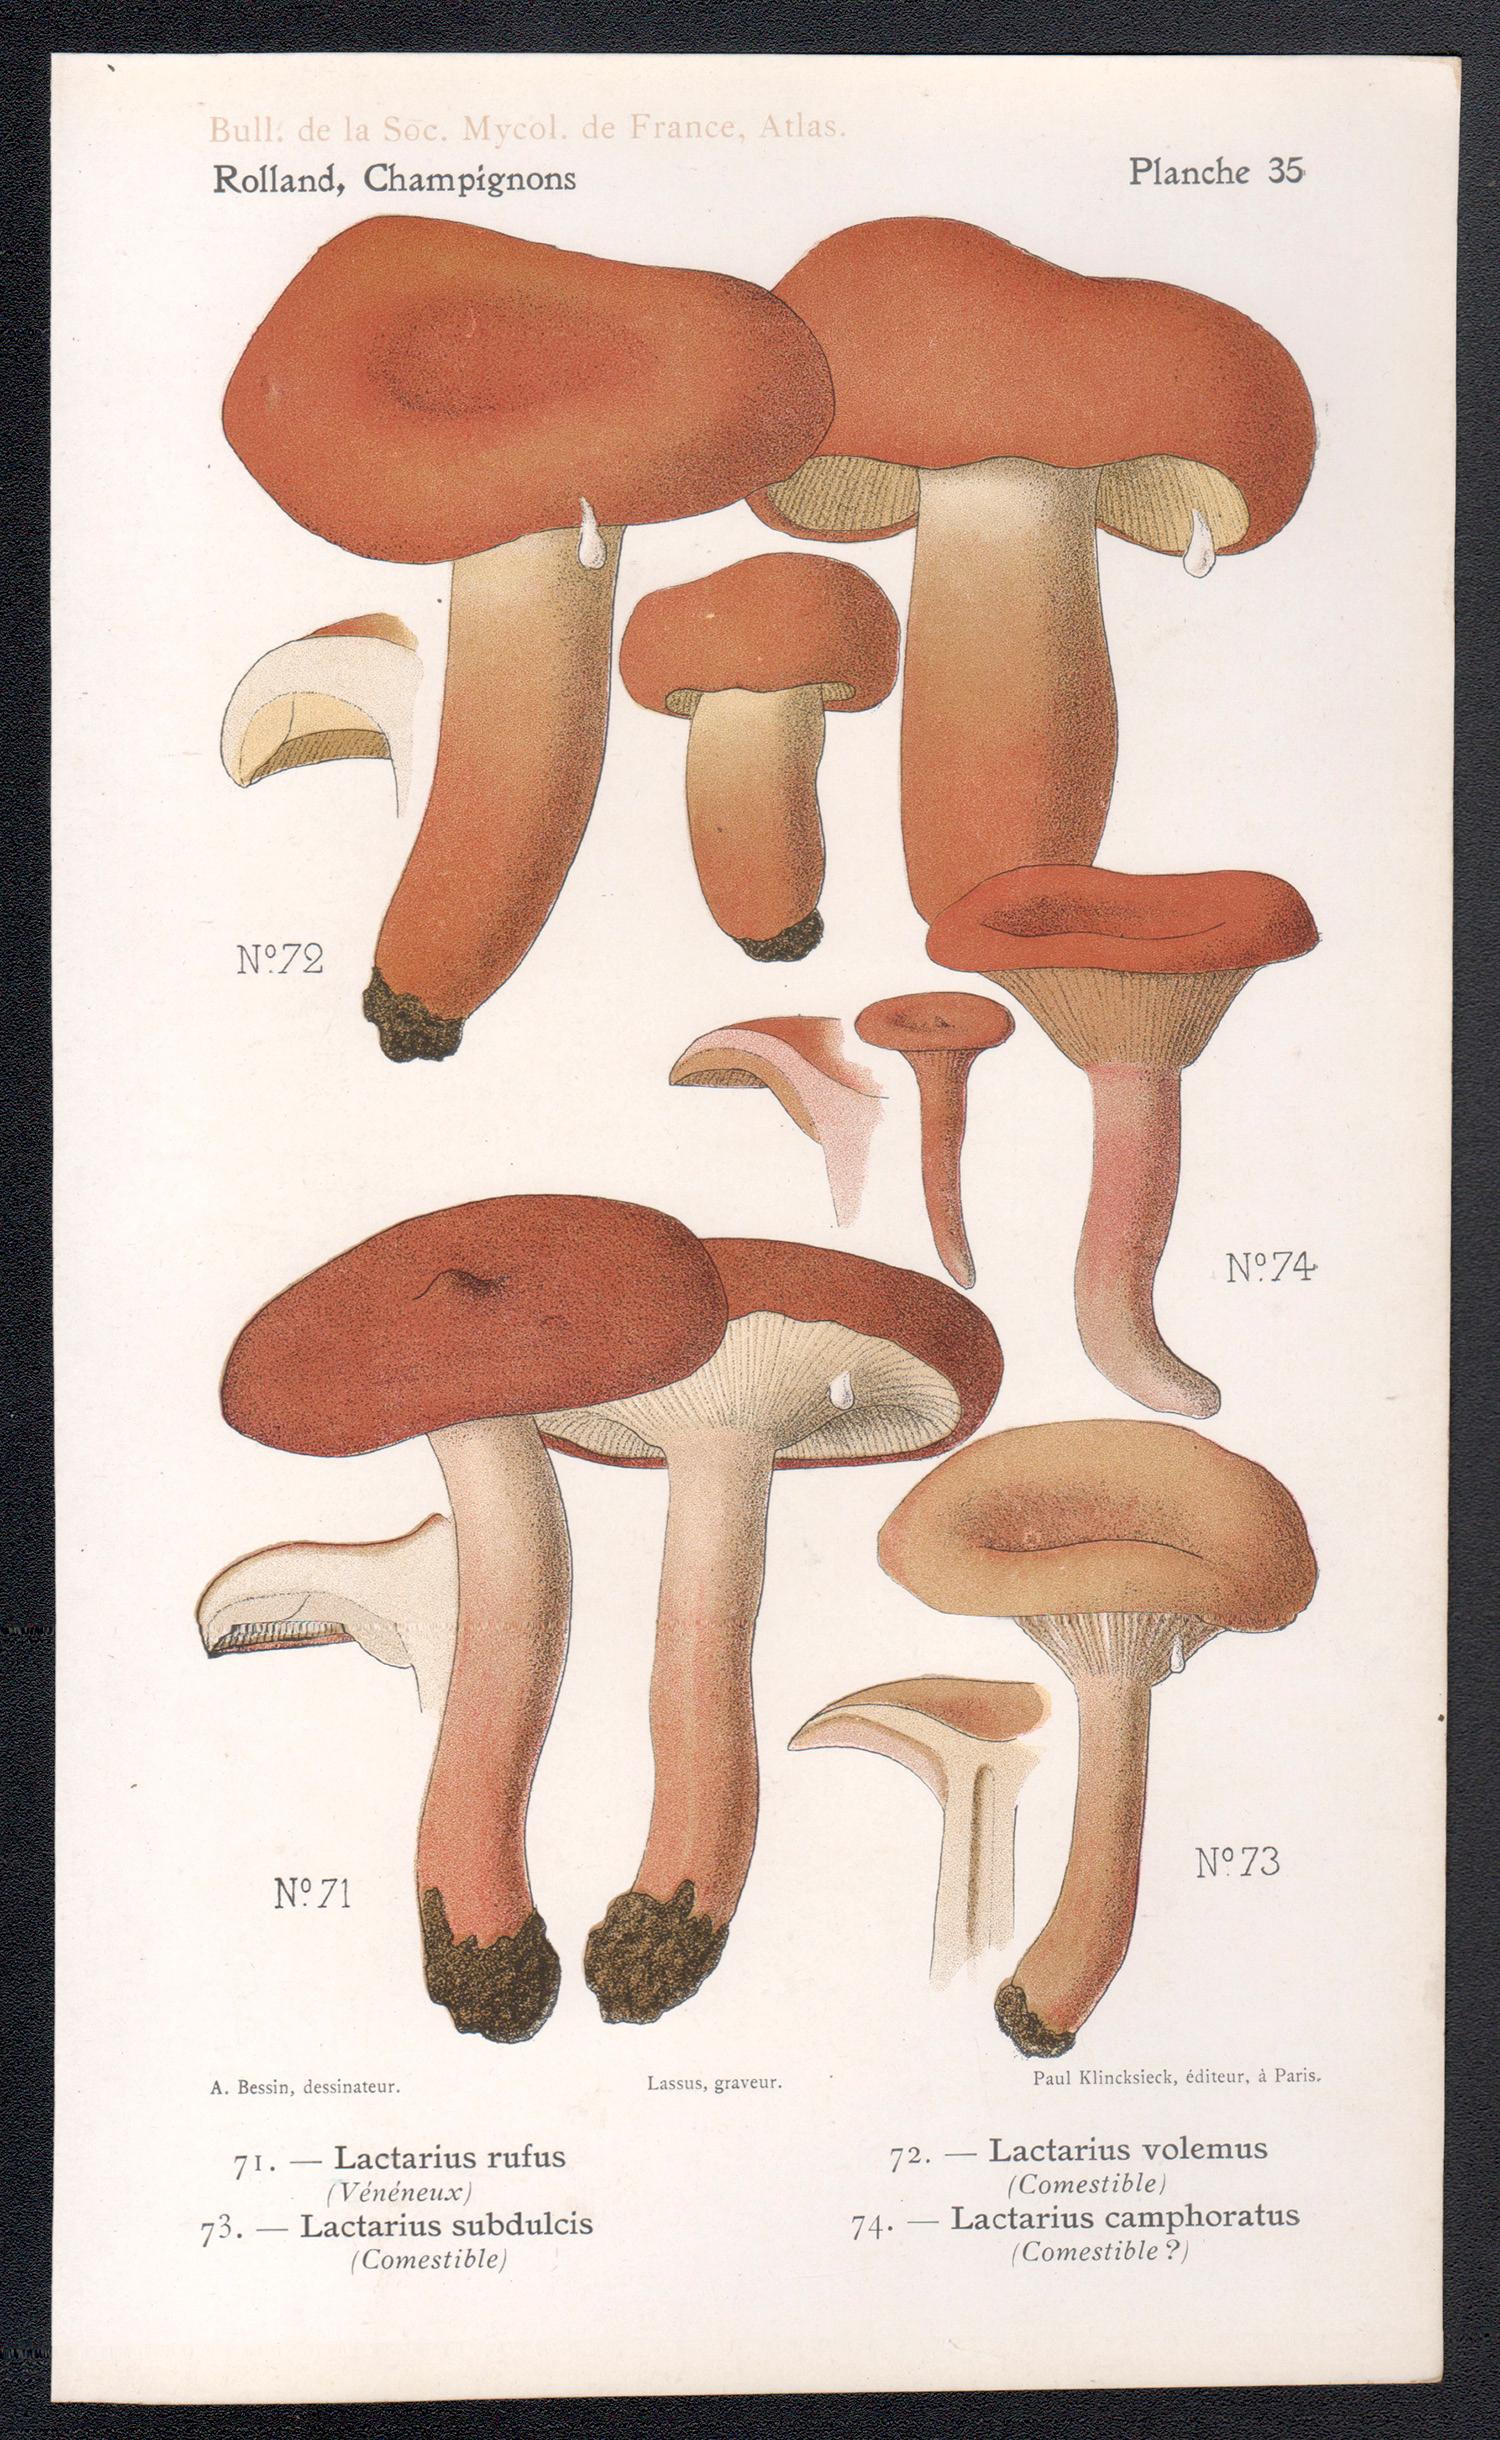 Champignons, chromolithographie française ancienne de champignons champignons, 1910 - Print de Lassus after Aimé Bessin